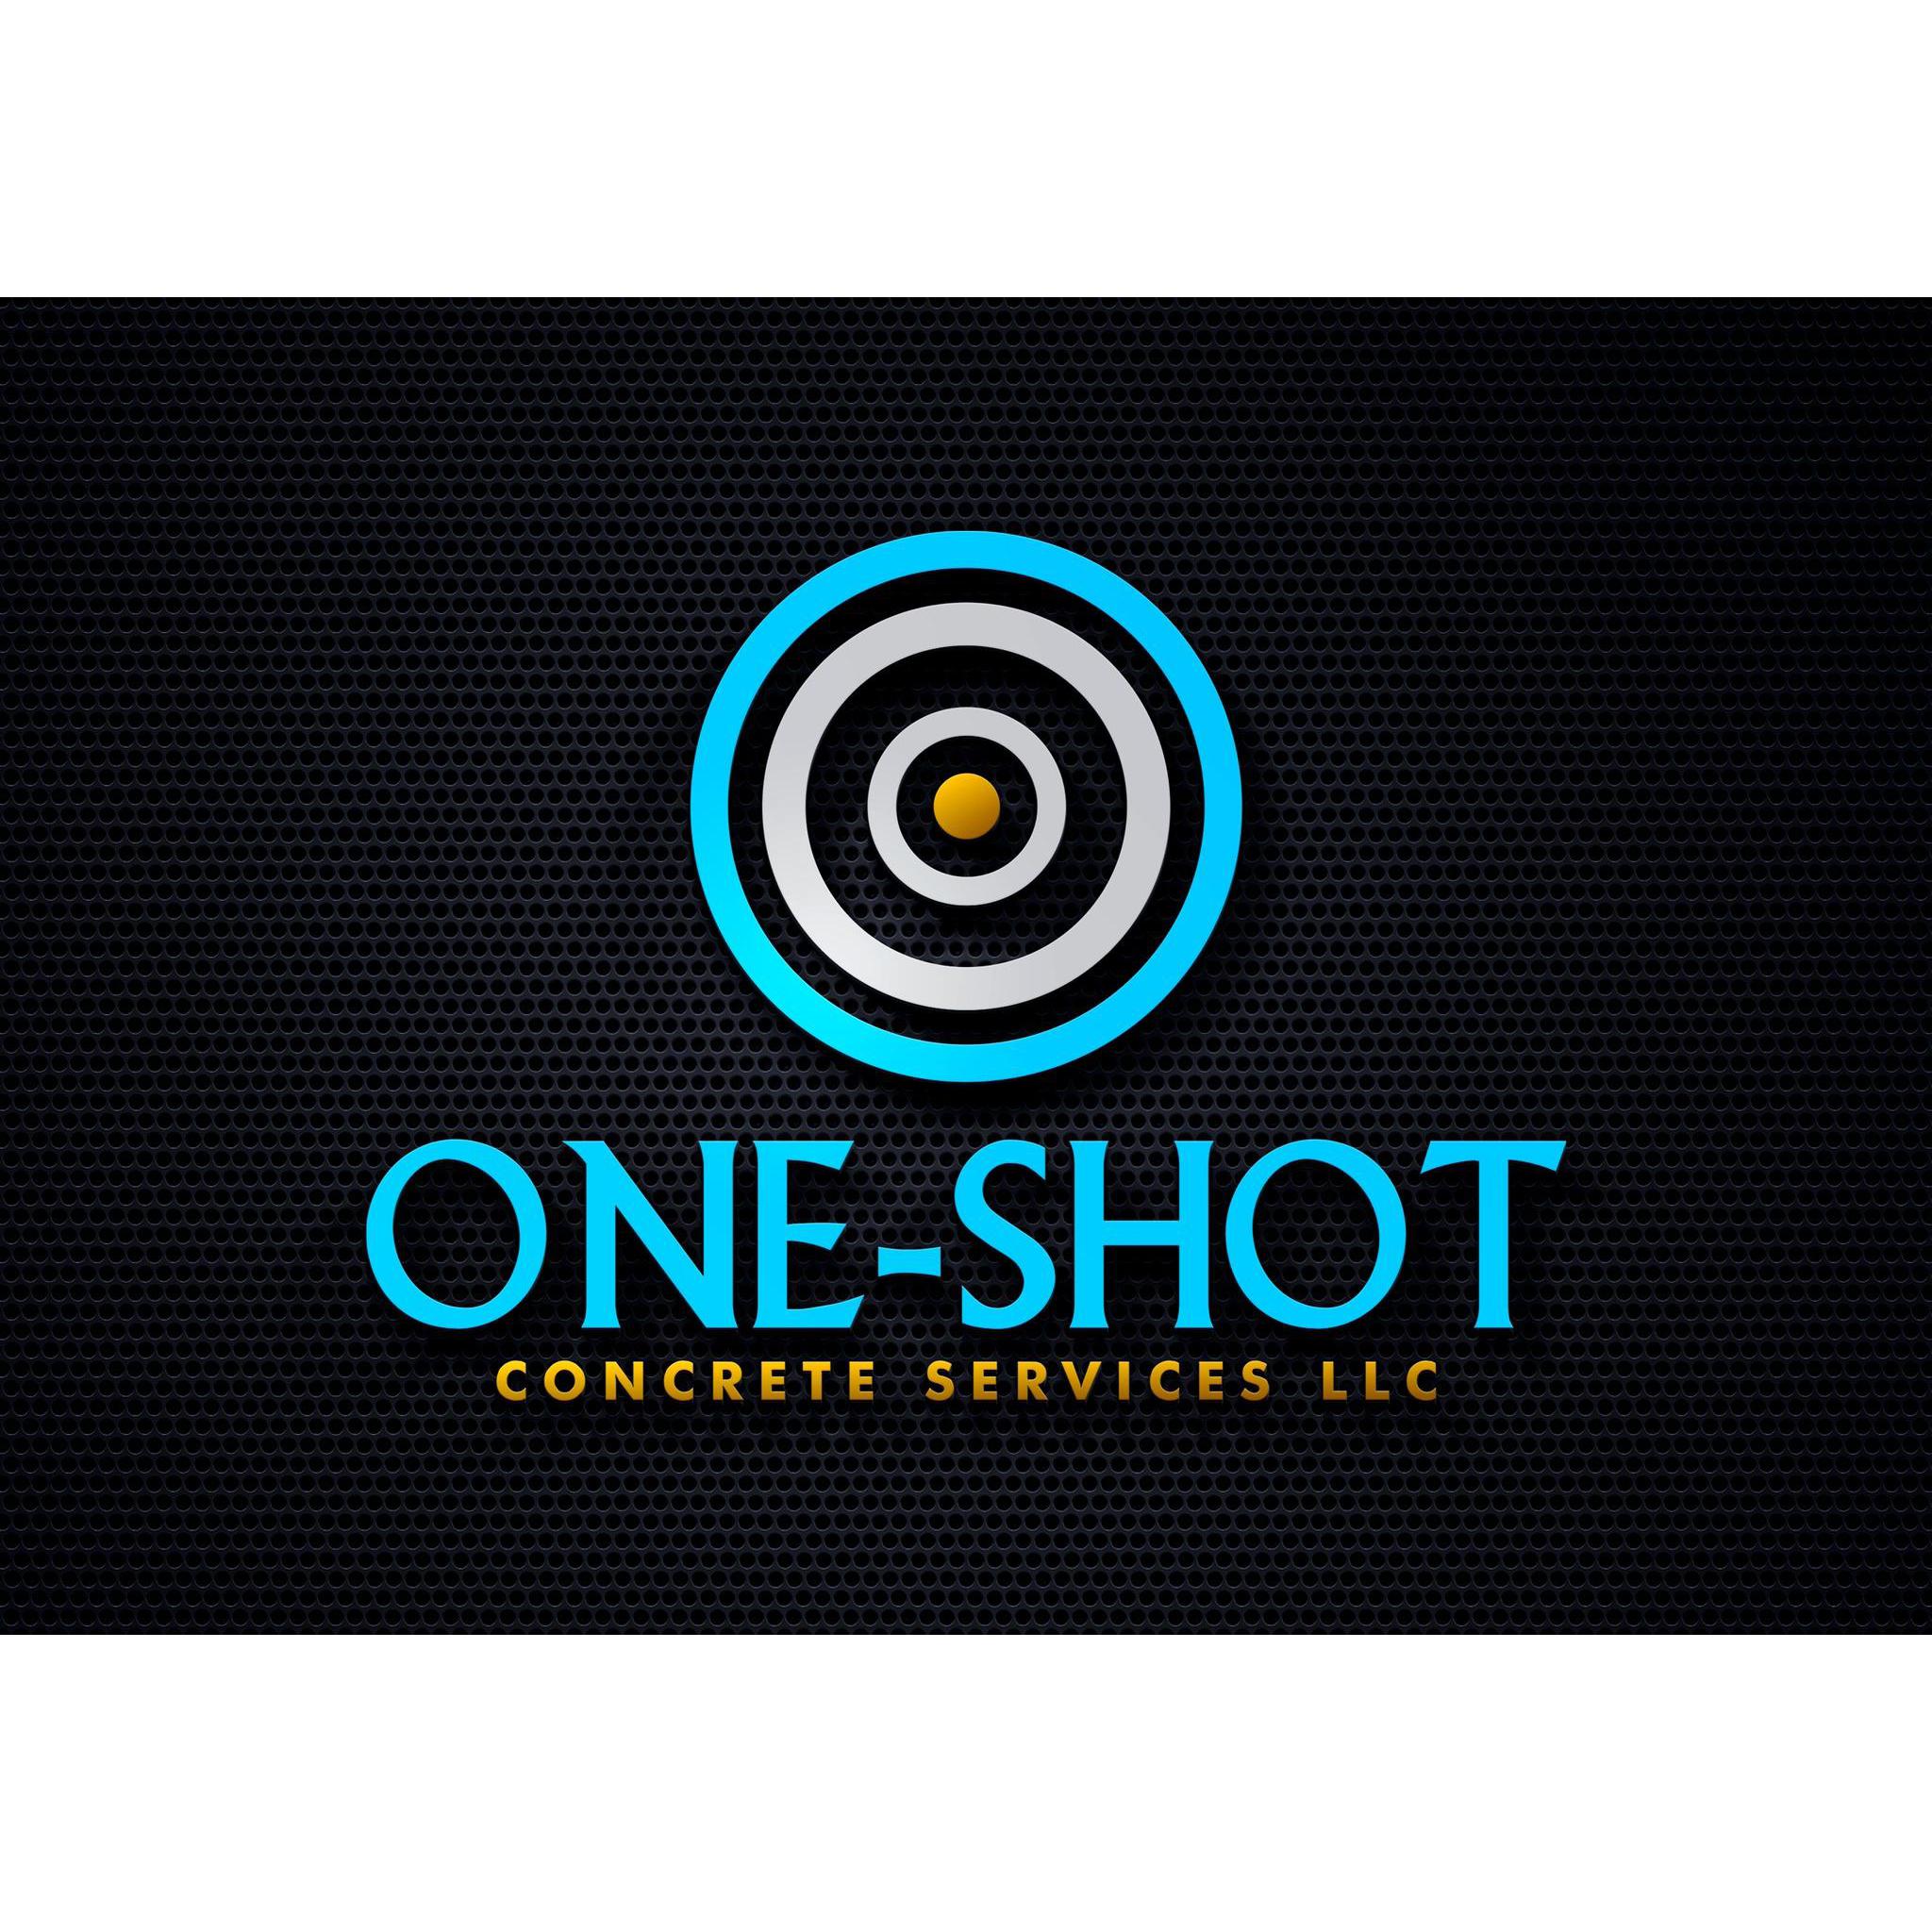 One-Shot Concrete Services